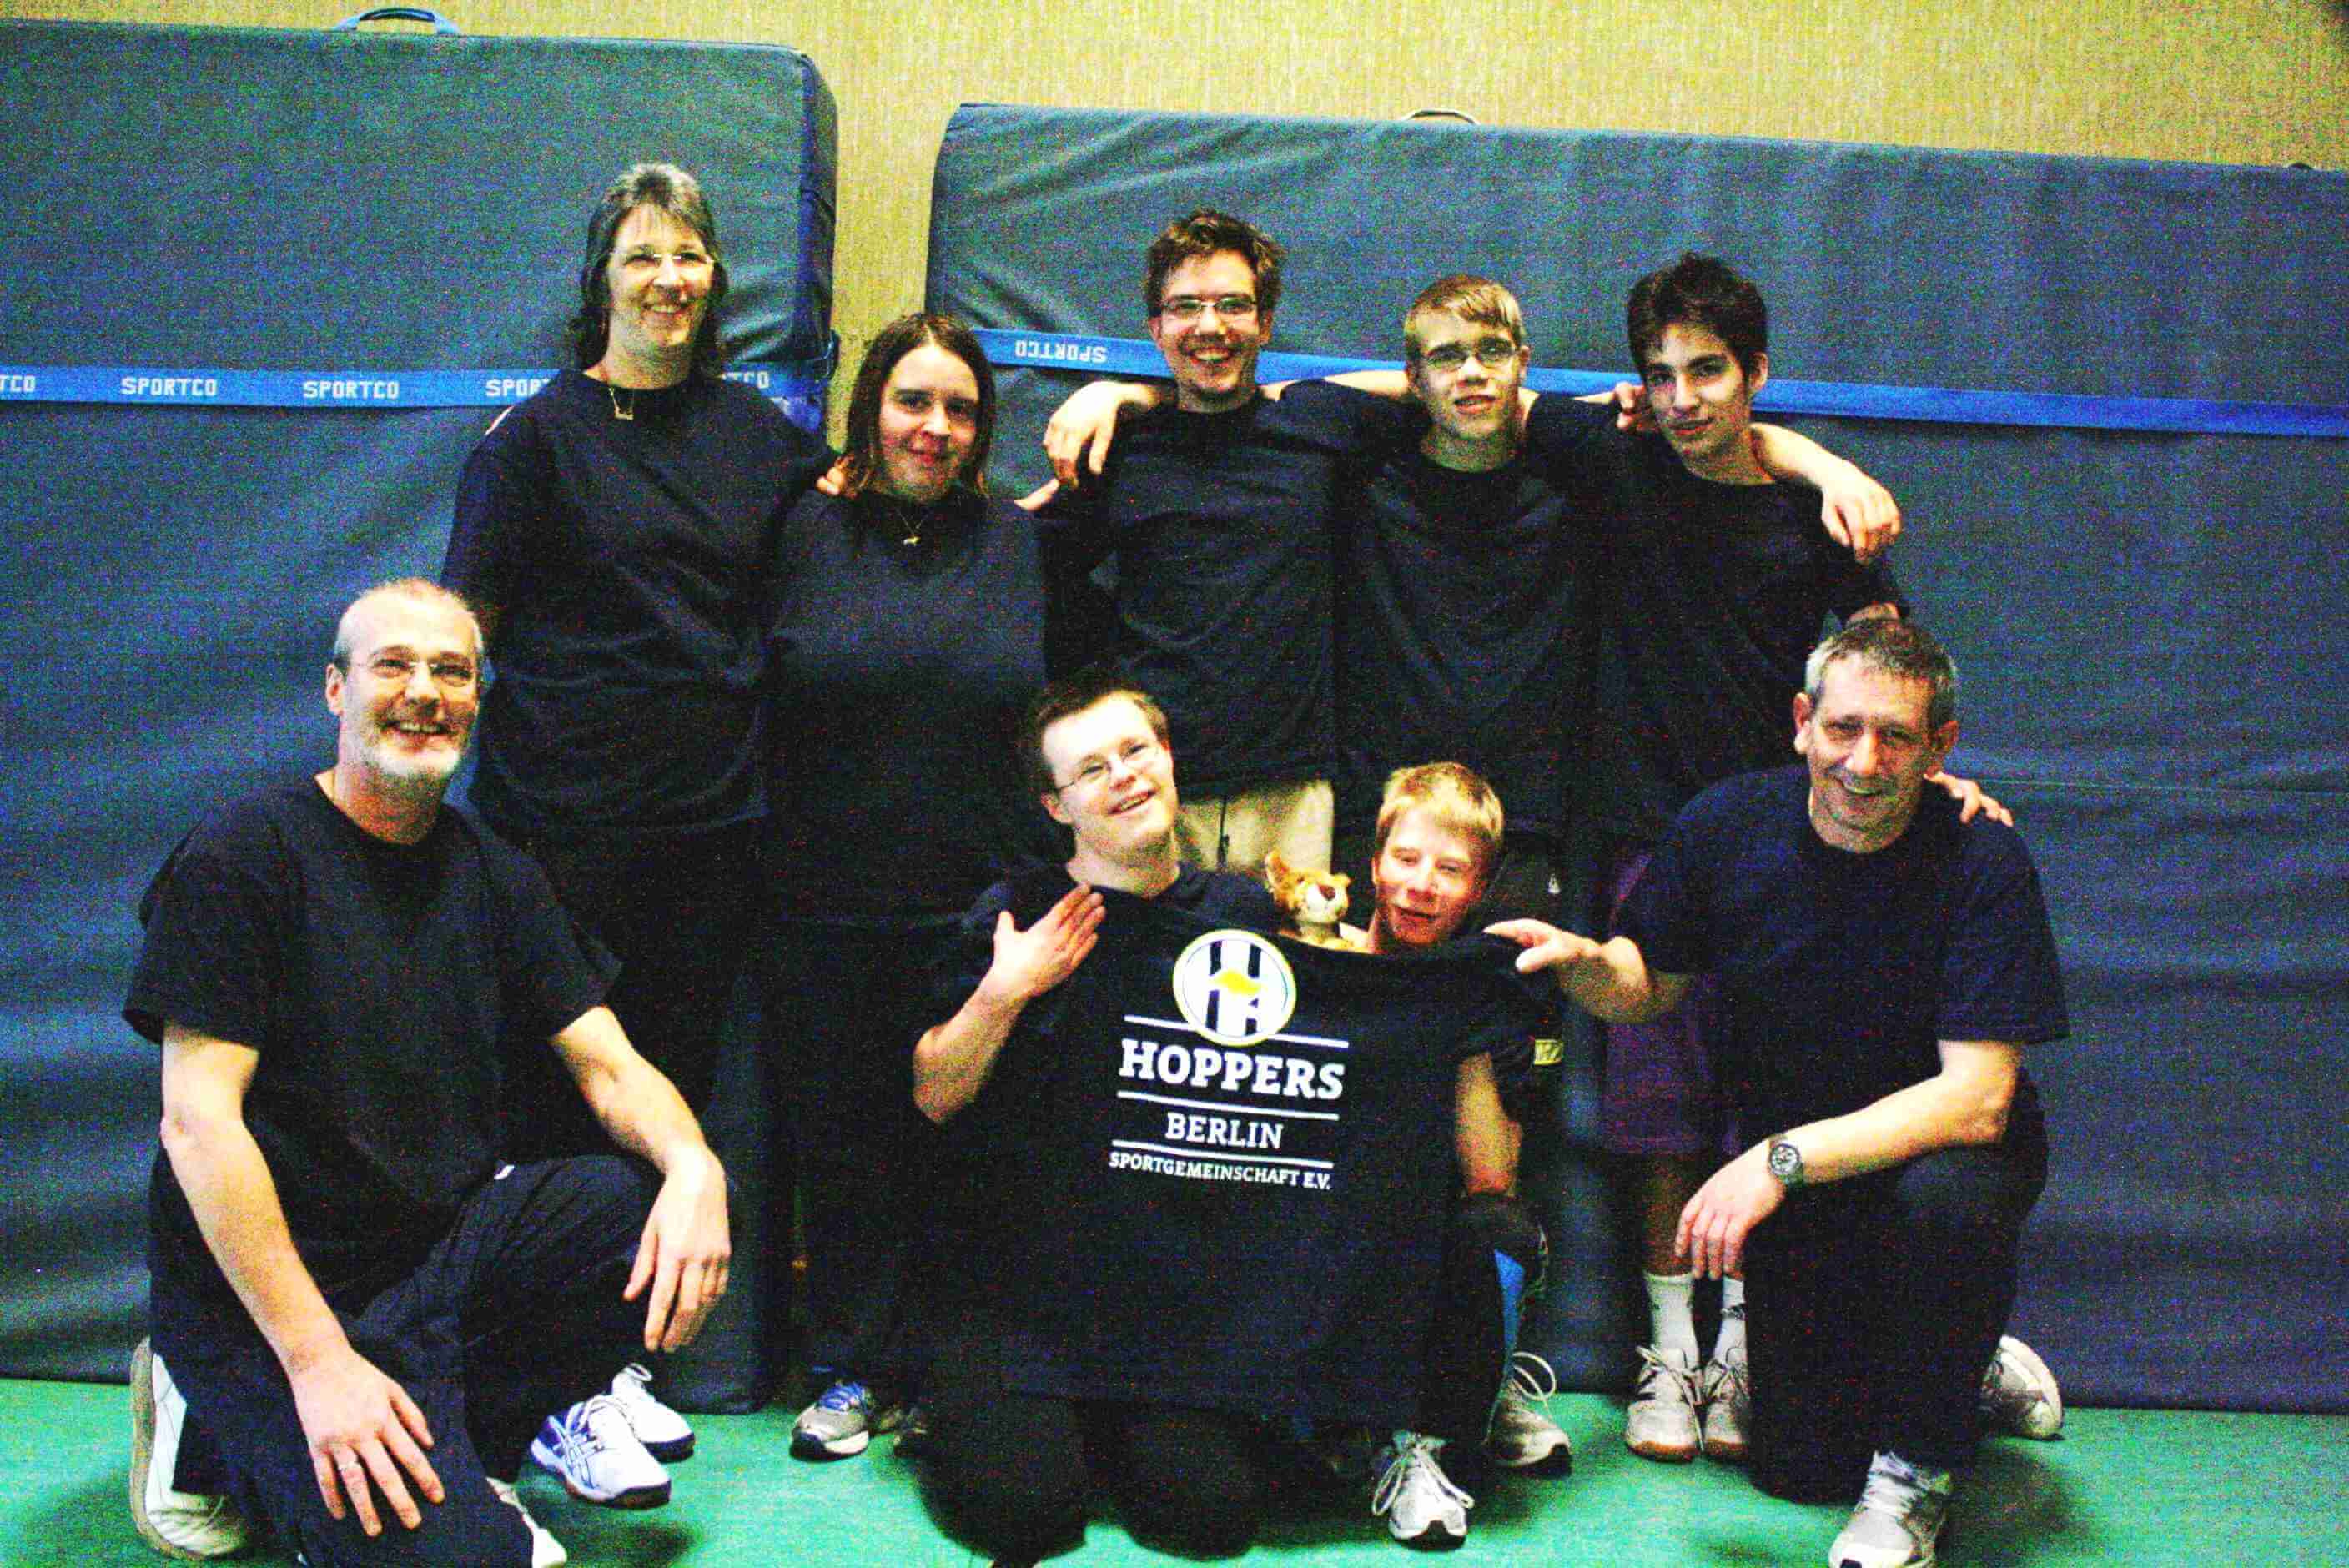 Hoppers Berlin trainieren in Zehlendorf für Special Olympics / Sponsoren gesucht